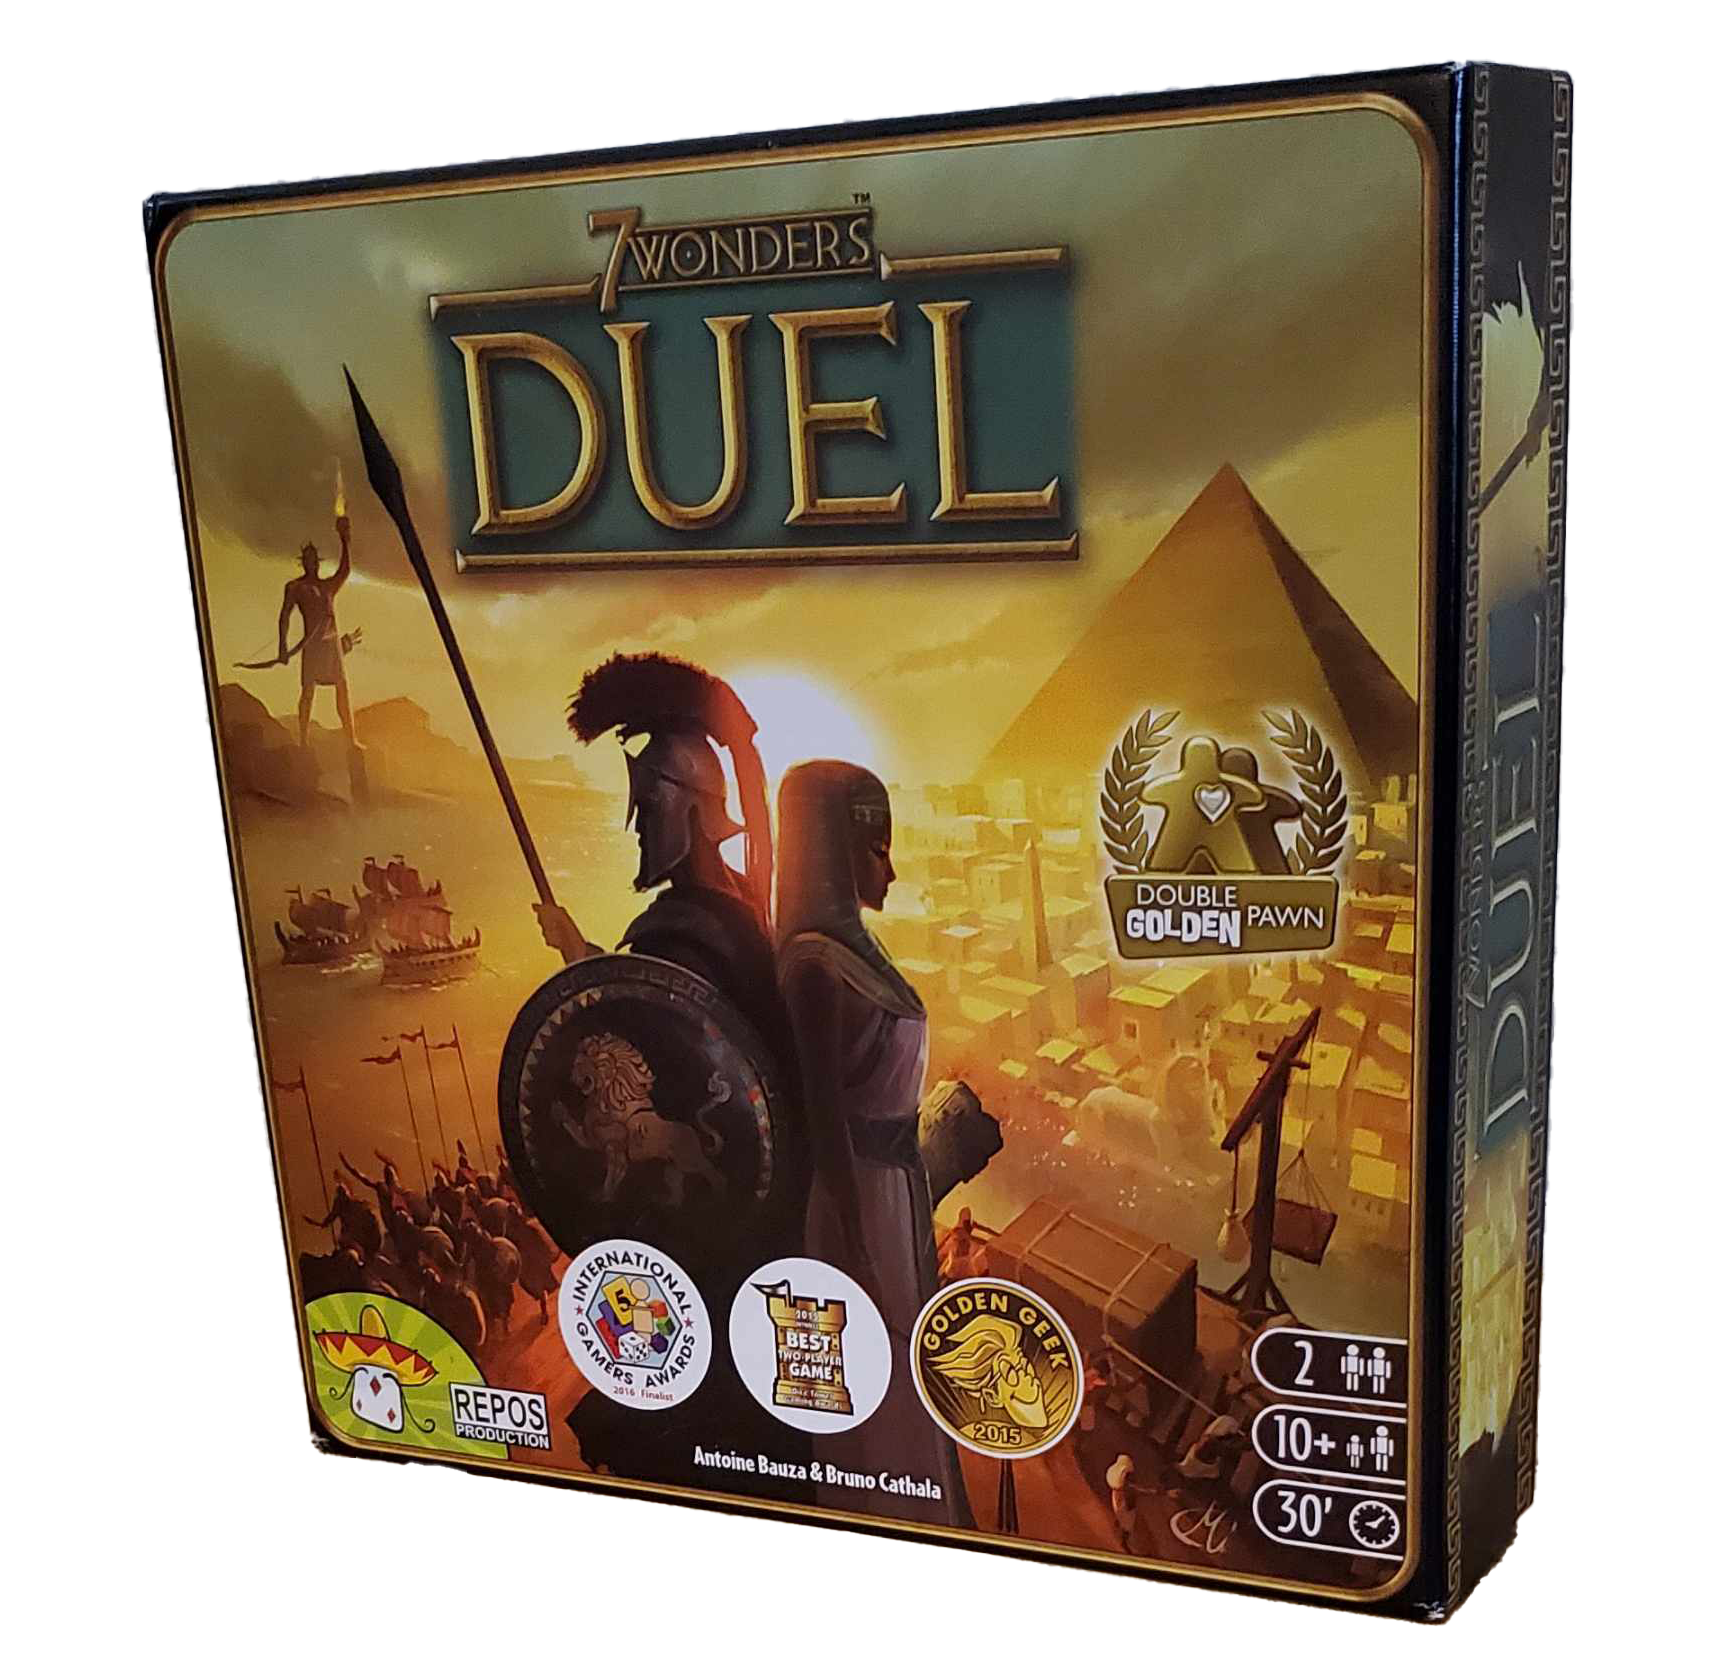 The board game 7 Wonders Duel by Asmodee